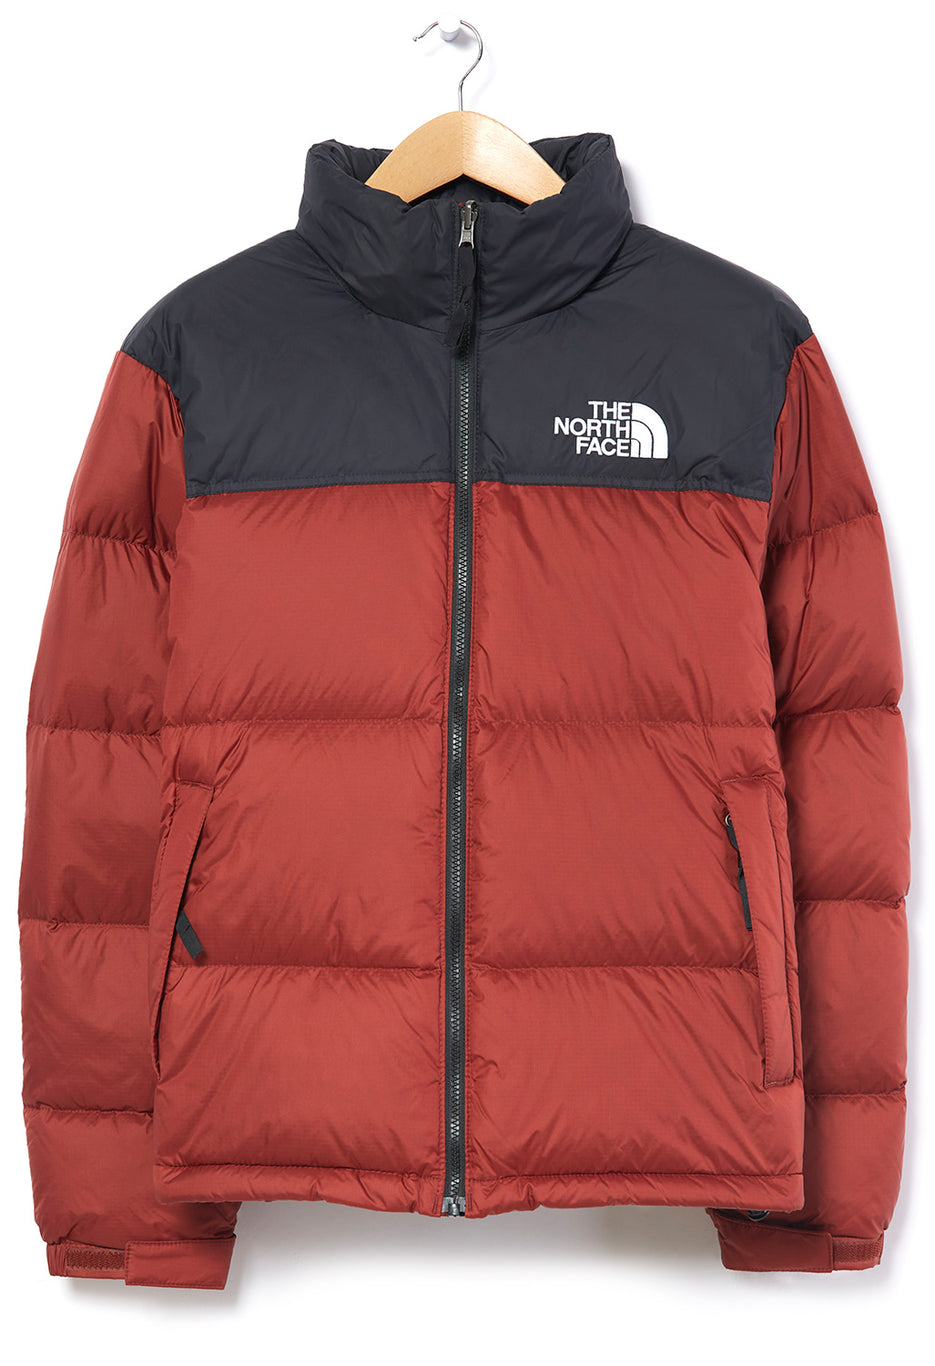 The North Face 1996 Retro Nuptse Men's Jacket 102